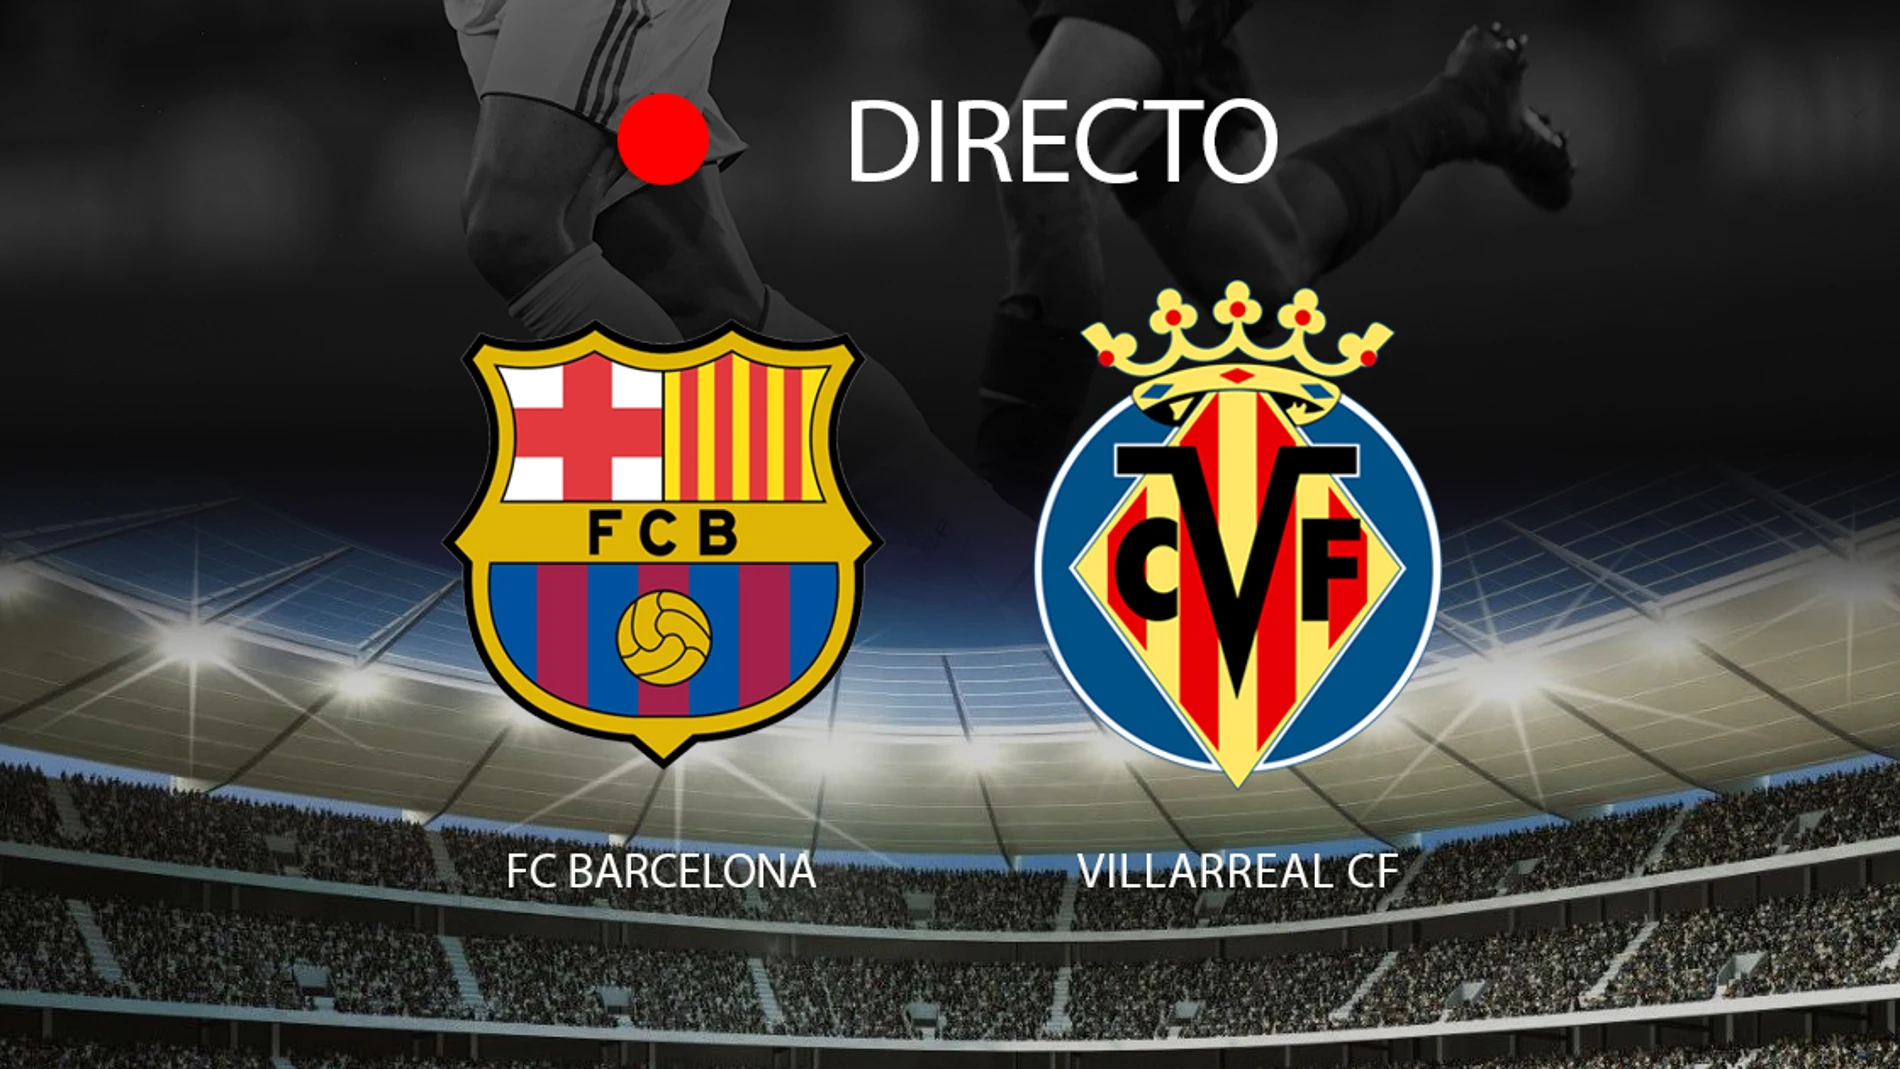 FC Barcelona - Villarreal CF, partido de la jornada 6 de LaLiga 2019/2020